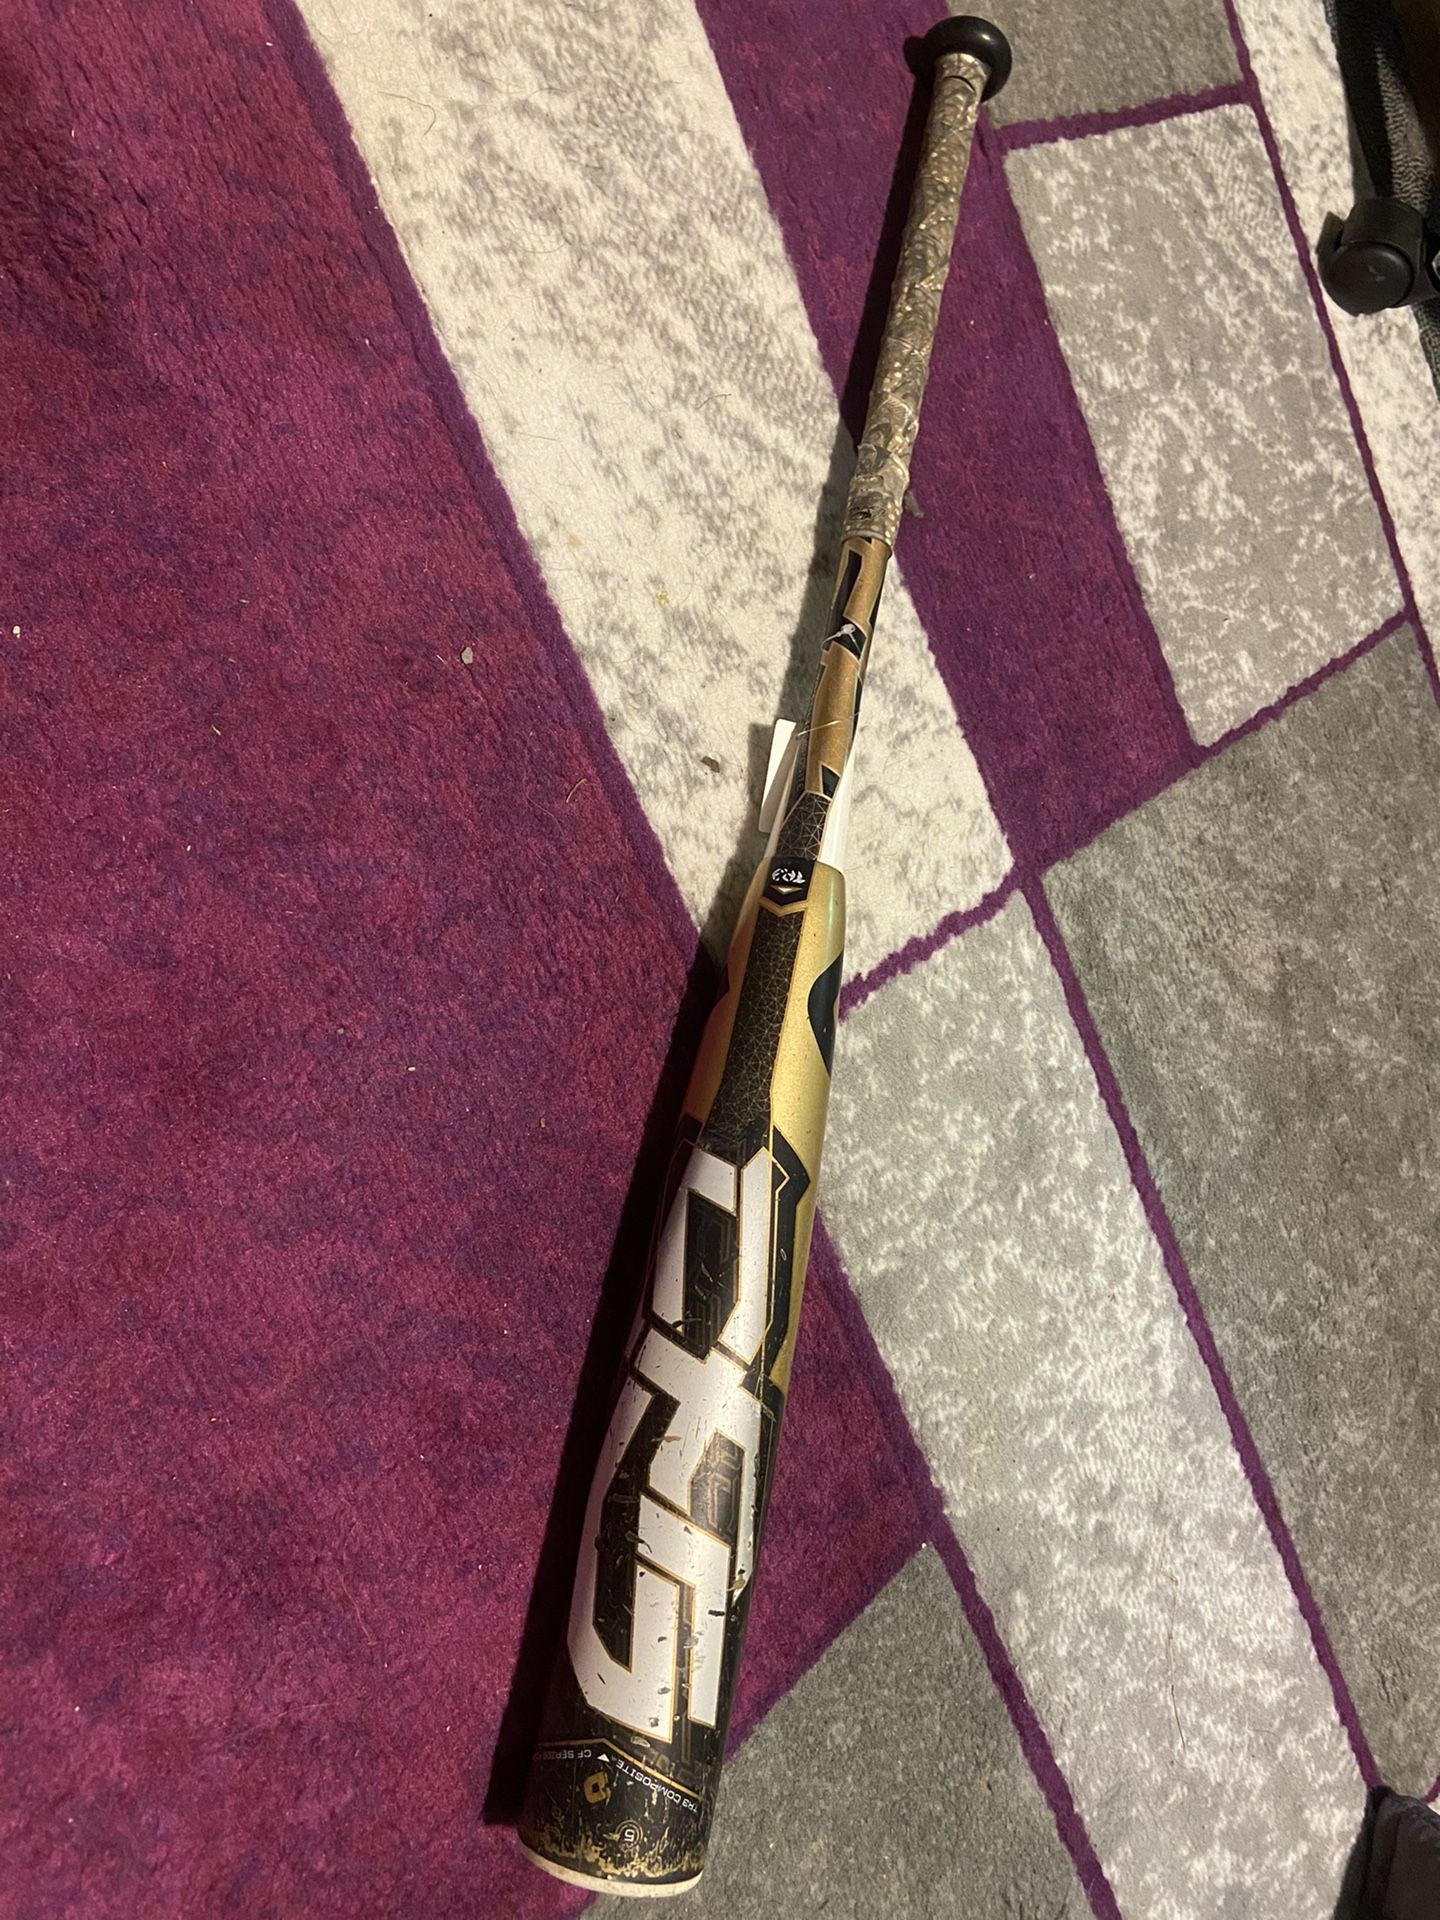 Demarini CF5 31”21oz USSSA big barrel baseball bat